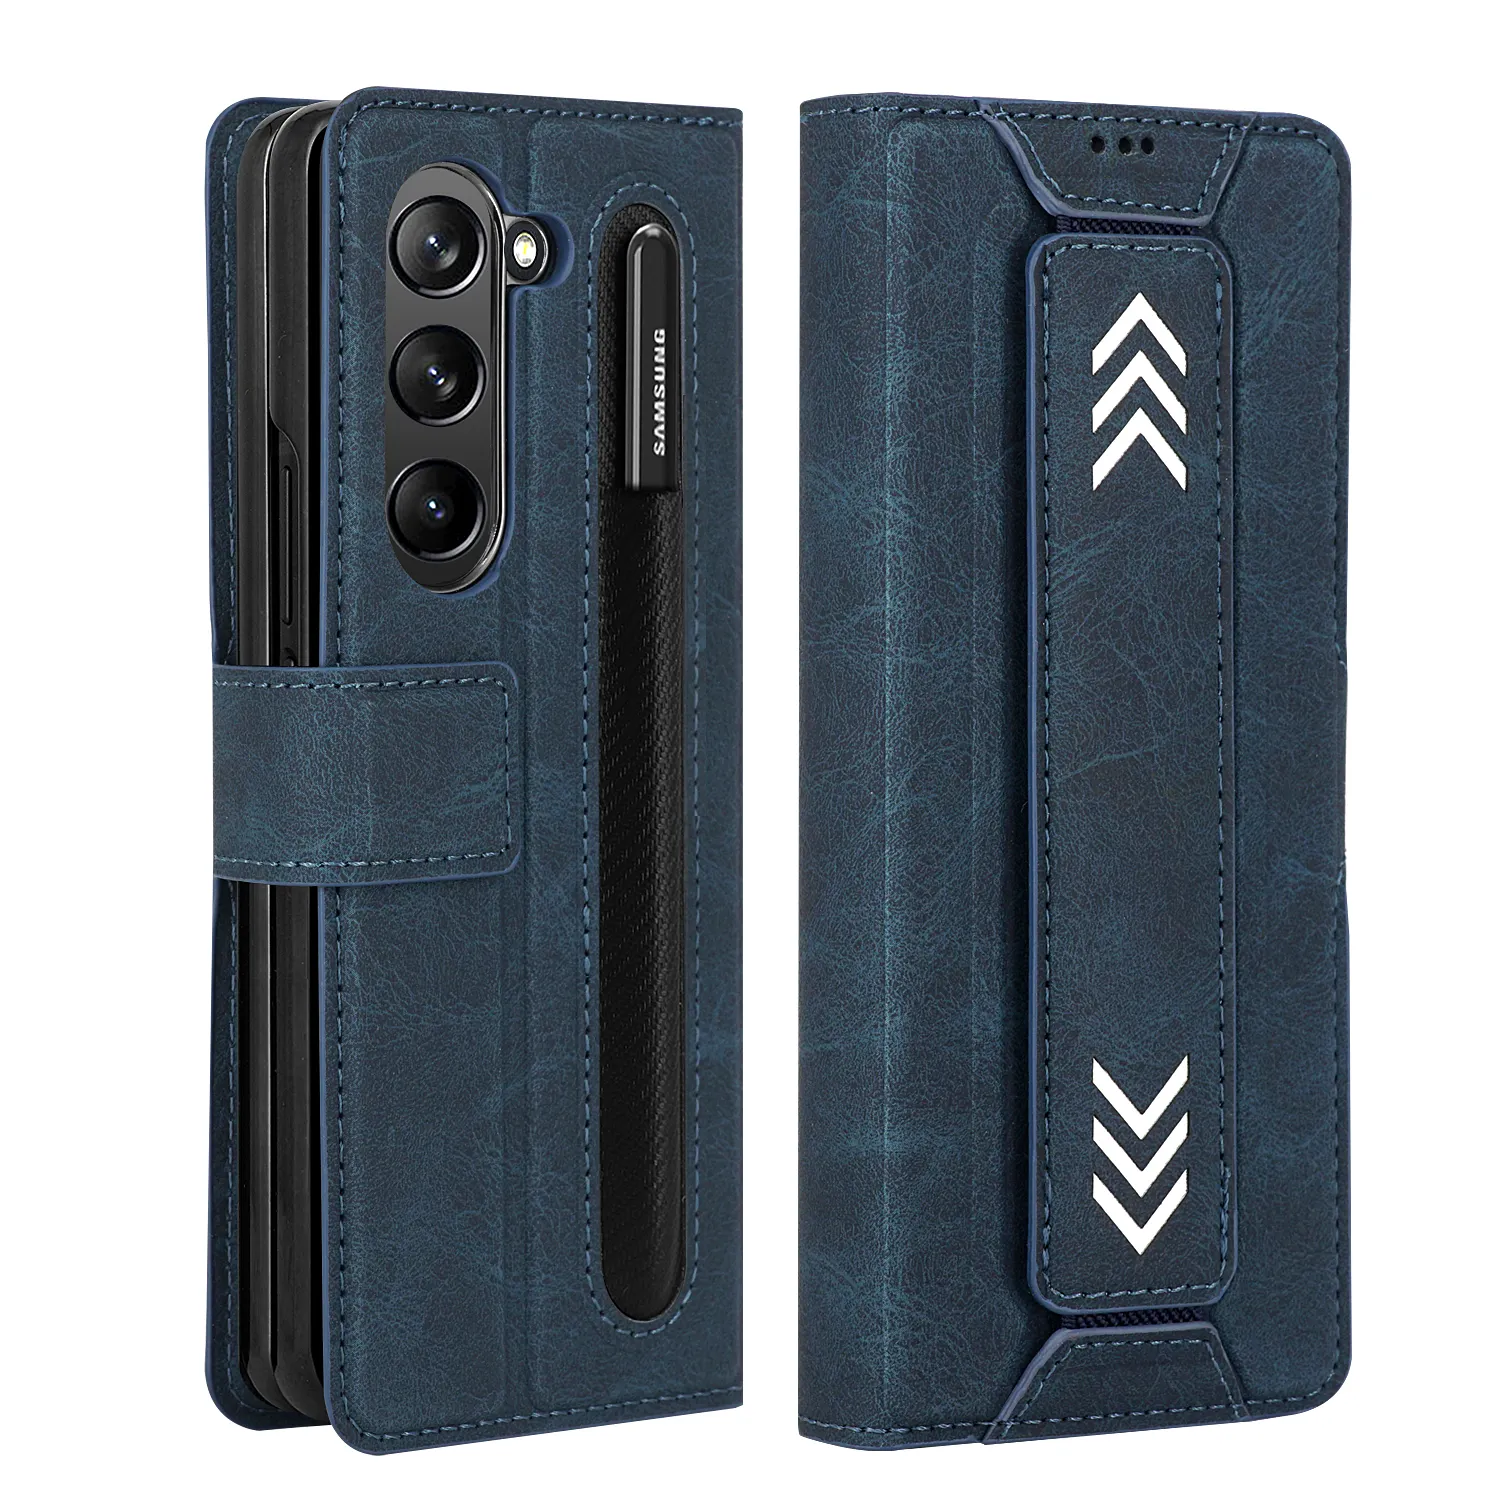 Z Fold 3 cüzdan kılıf Samsung Fold 3 Flip deri kılıf için kart tutucu ile